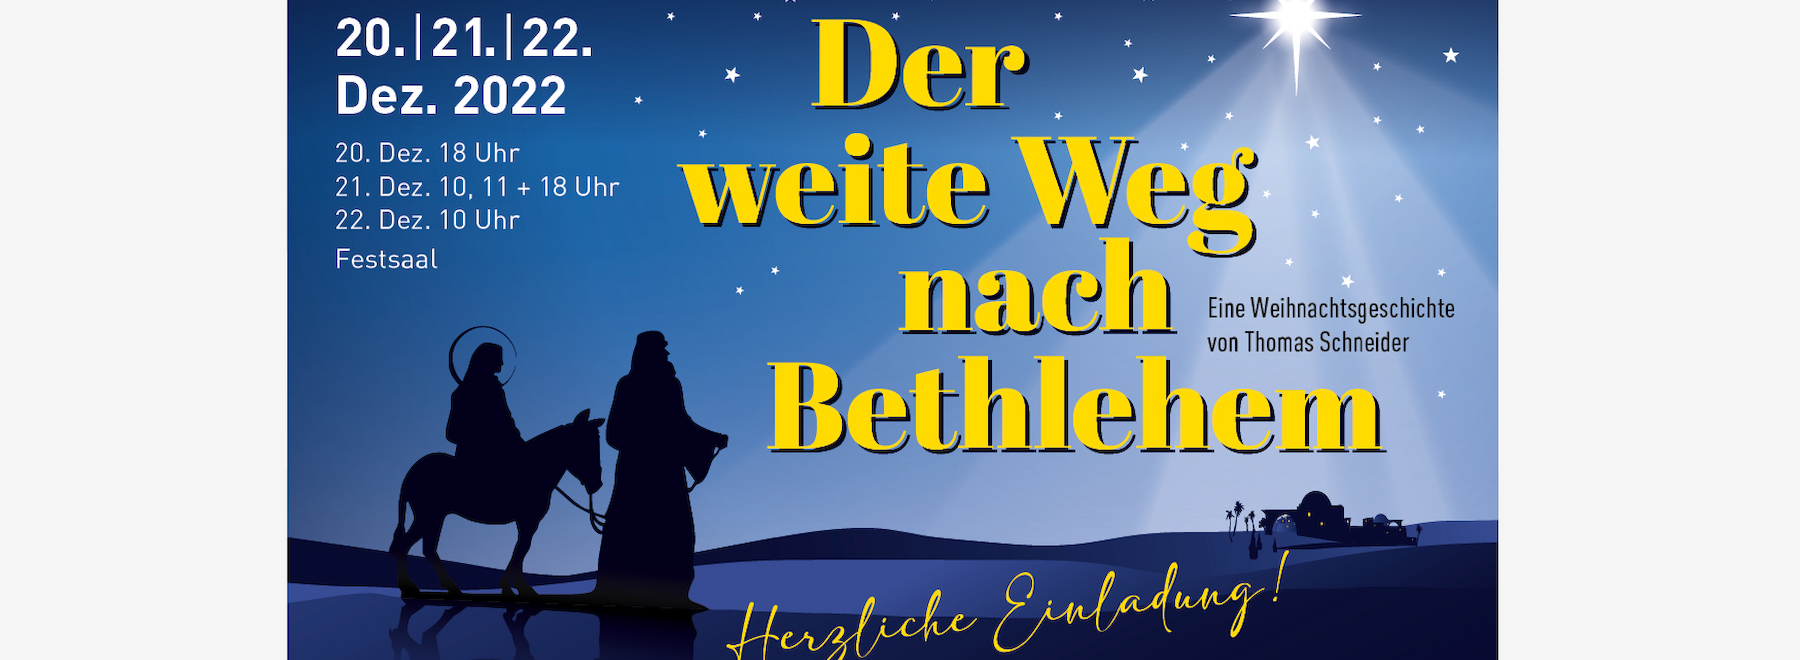 Der weite Weg nach Bethlehem